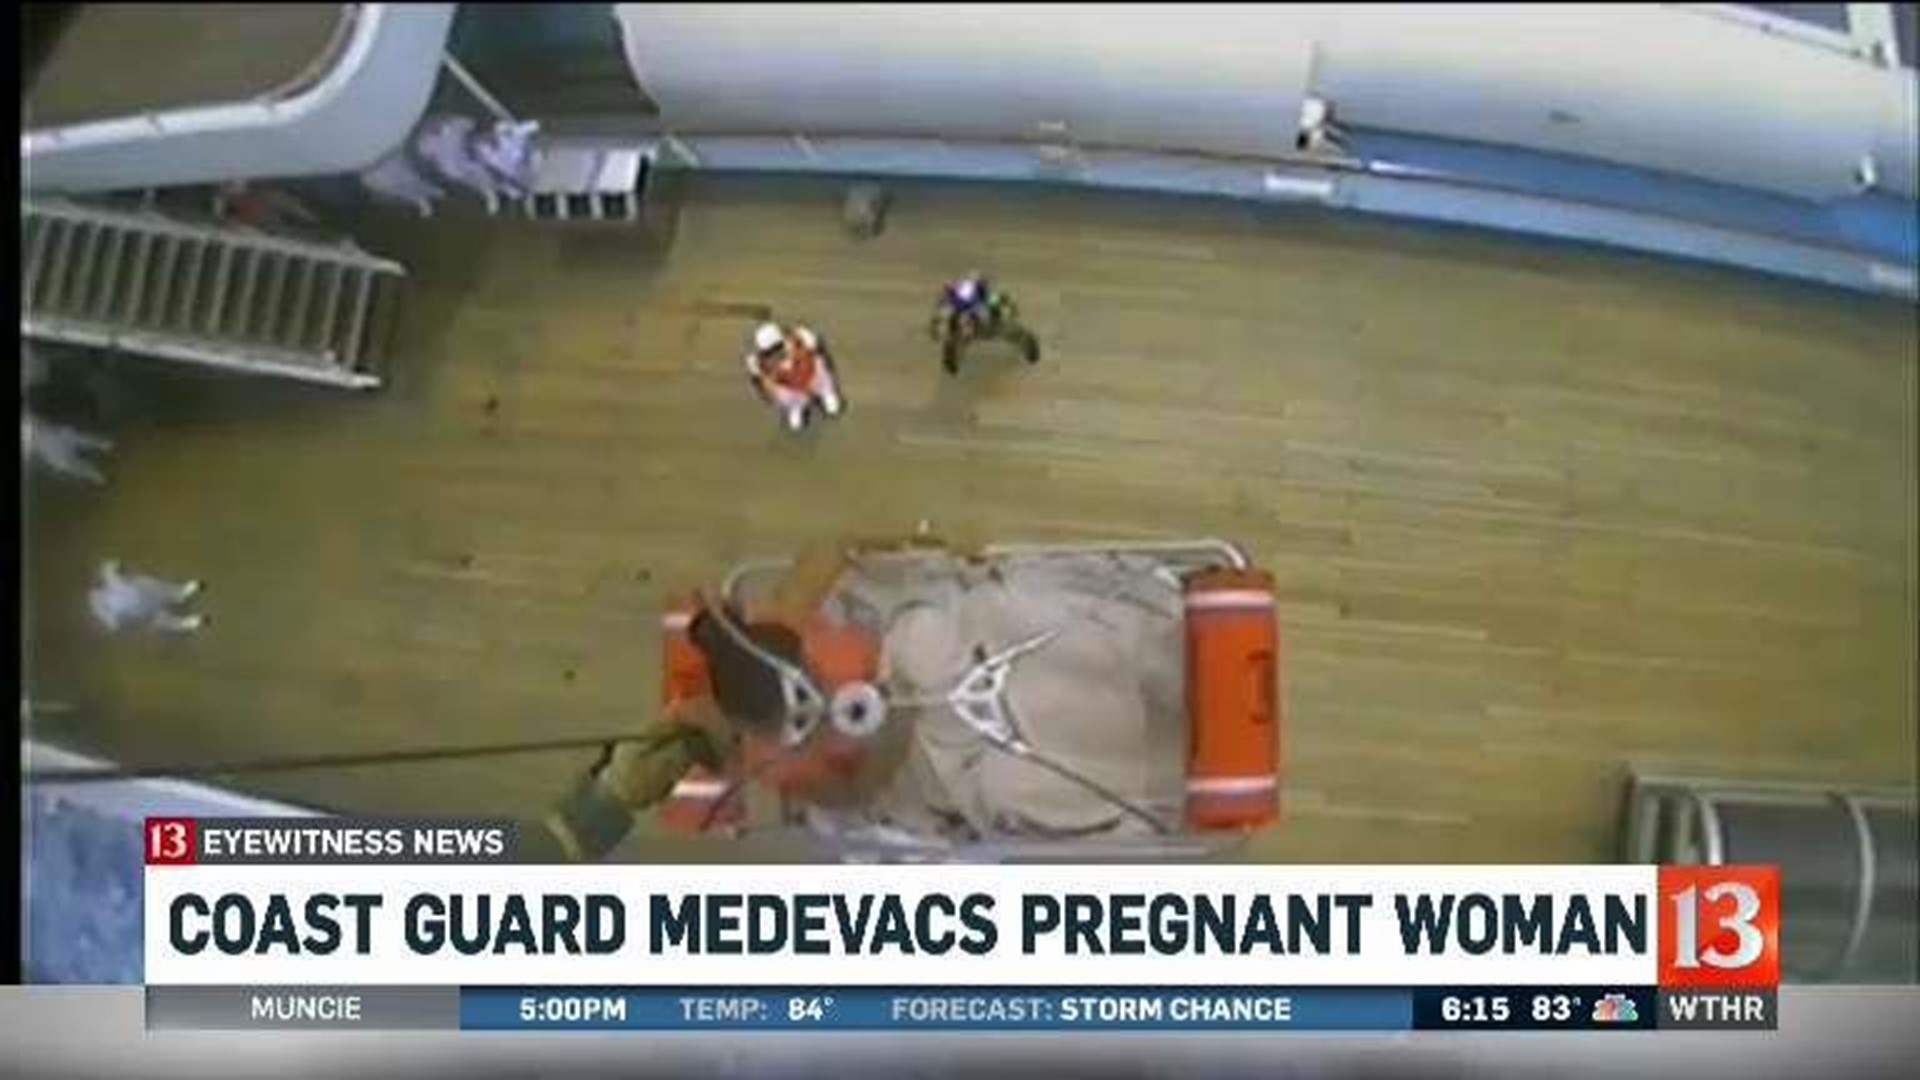 Coast Gaurd medevacs pregnant woman